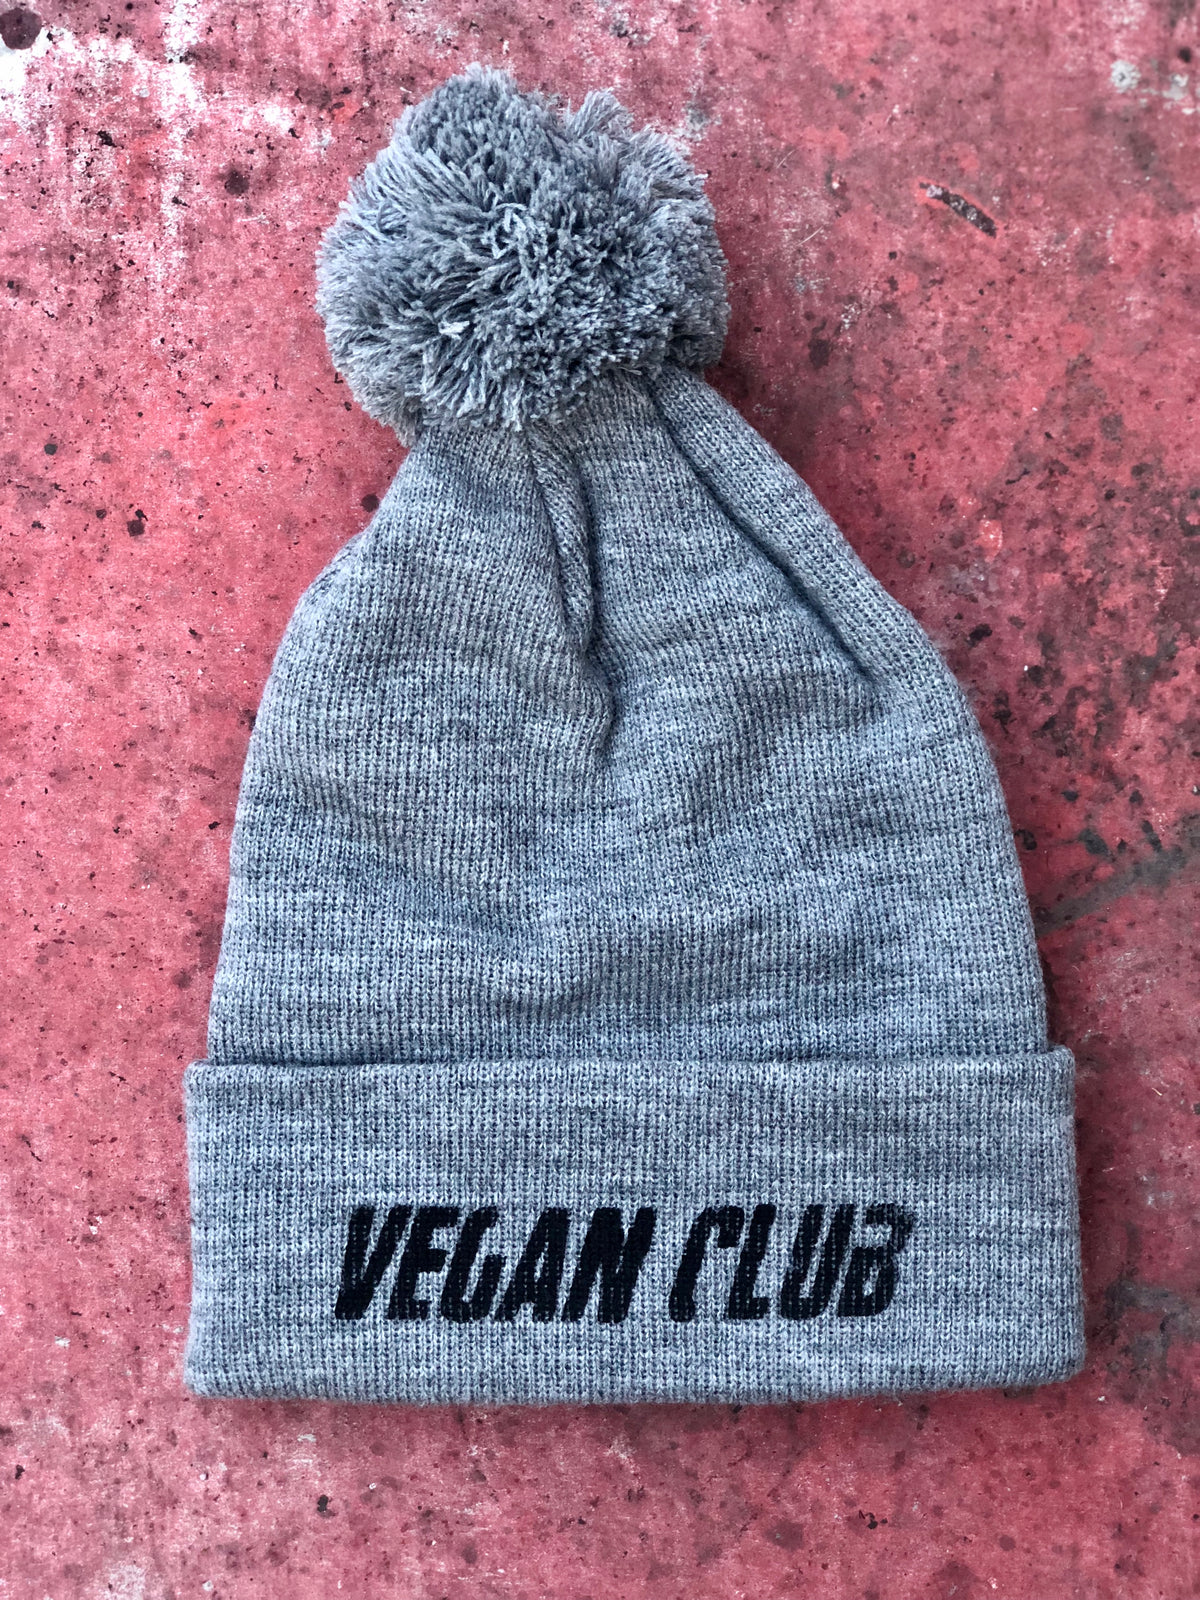 OUT OF STOCK - Vegan Club beanie with Pom Pom